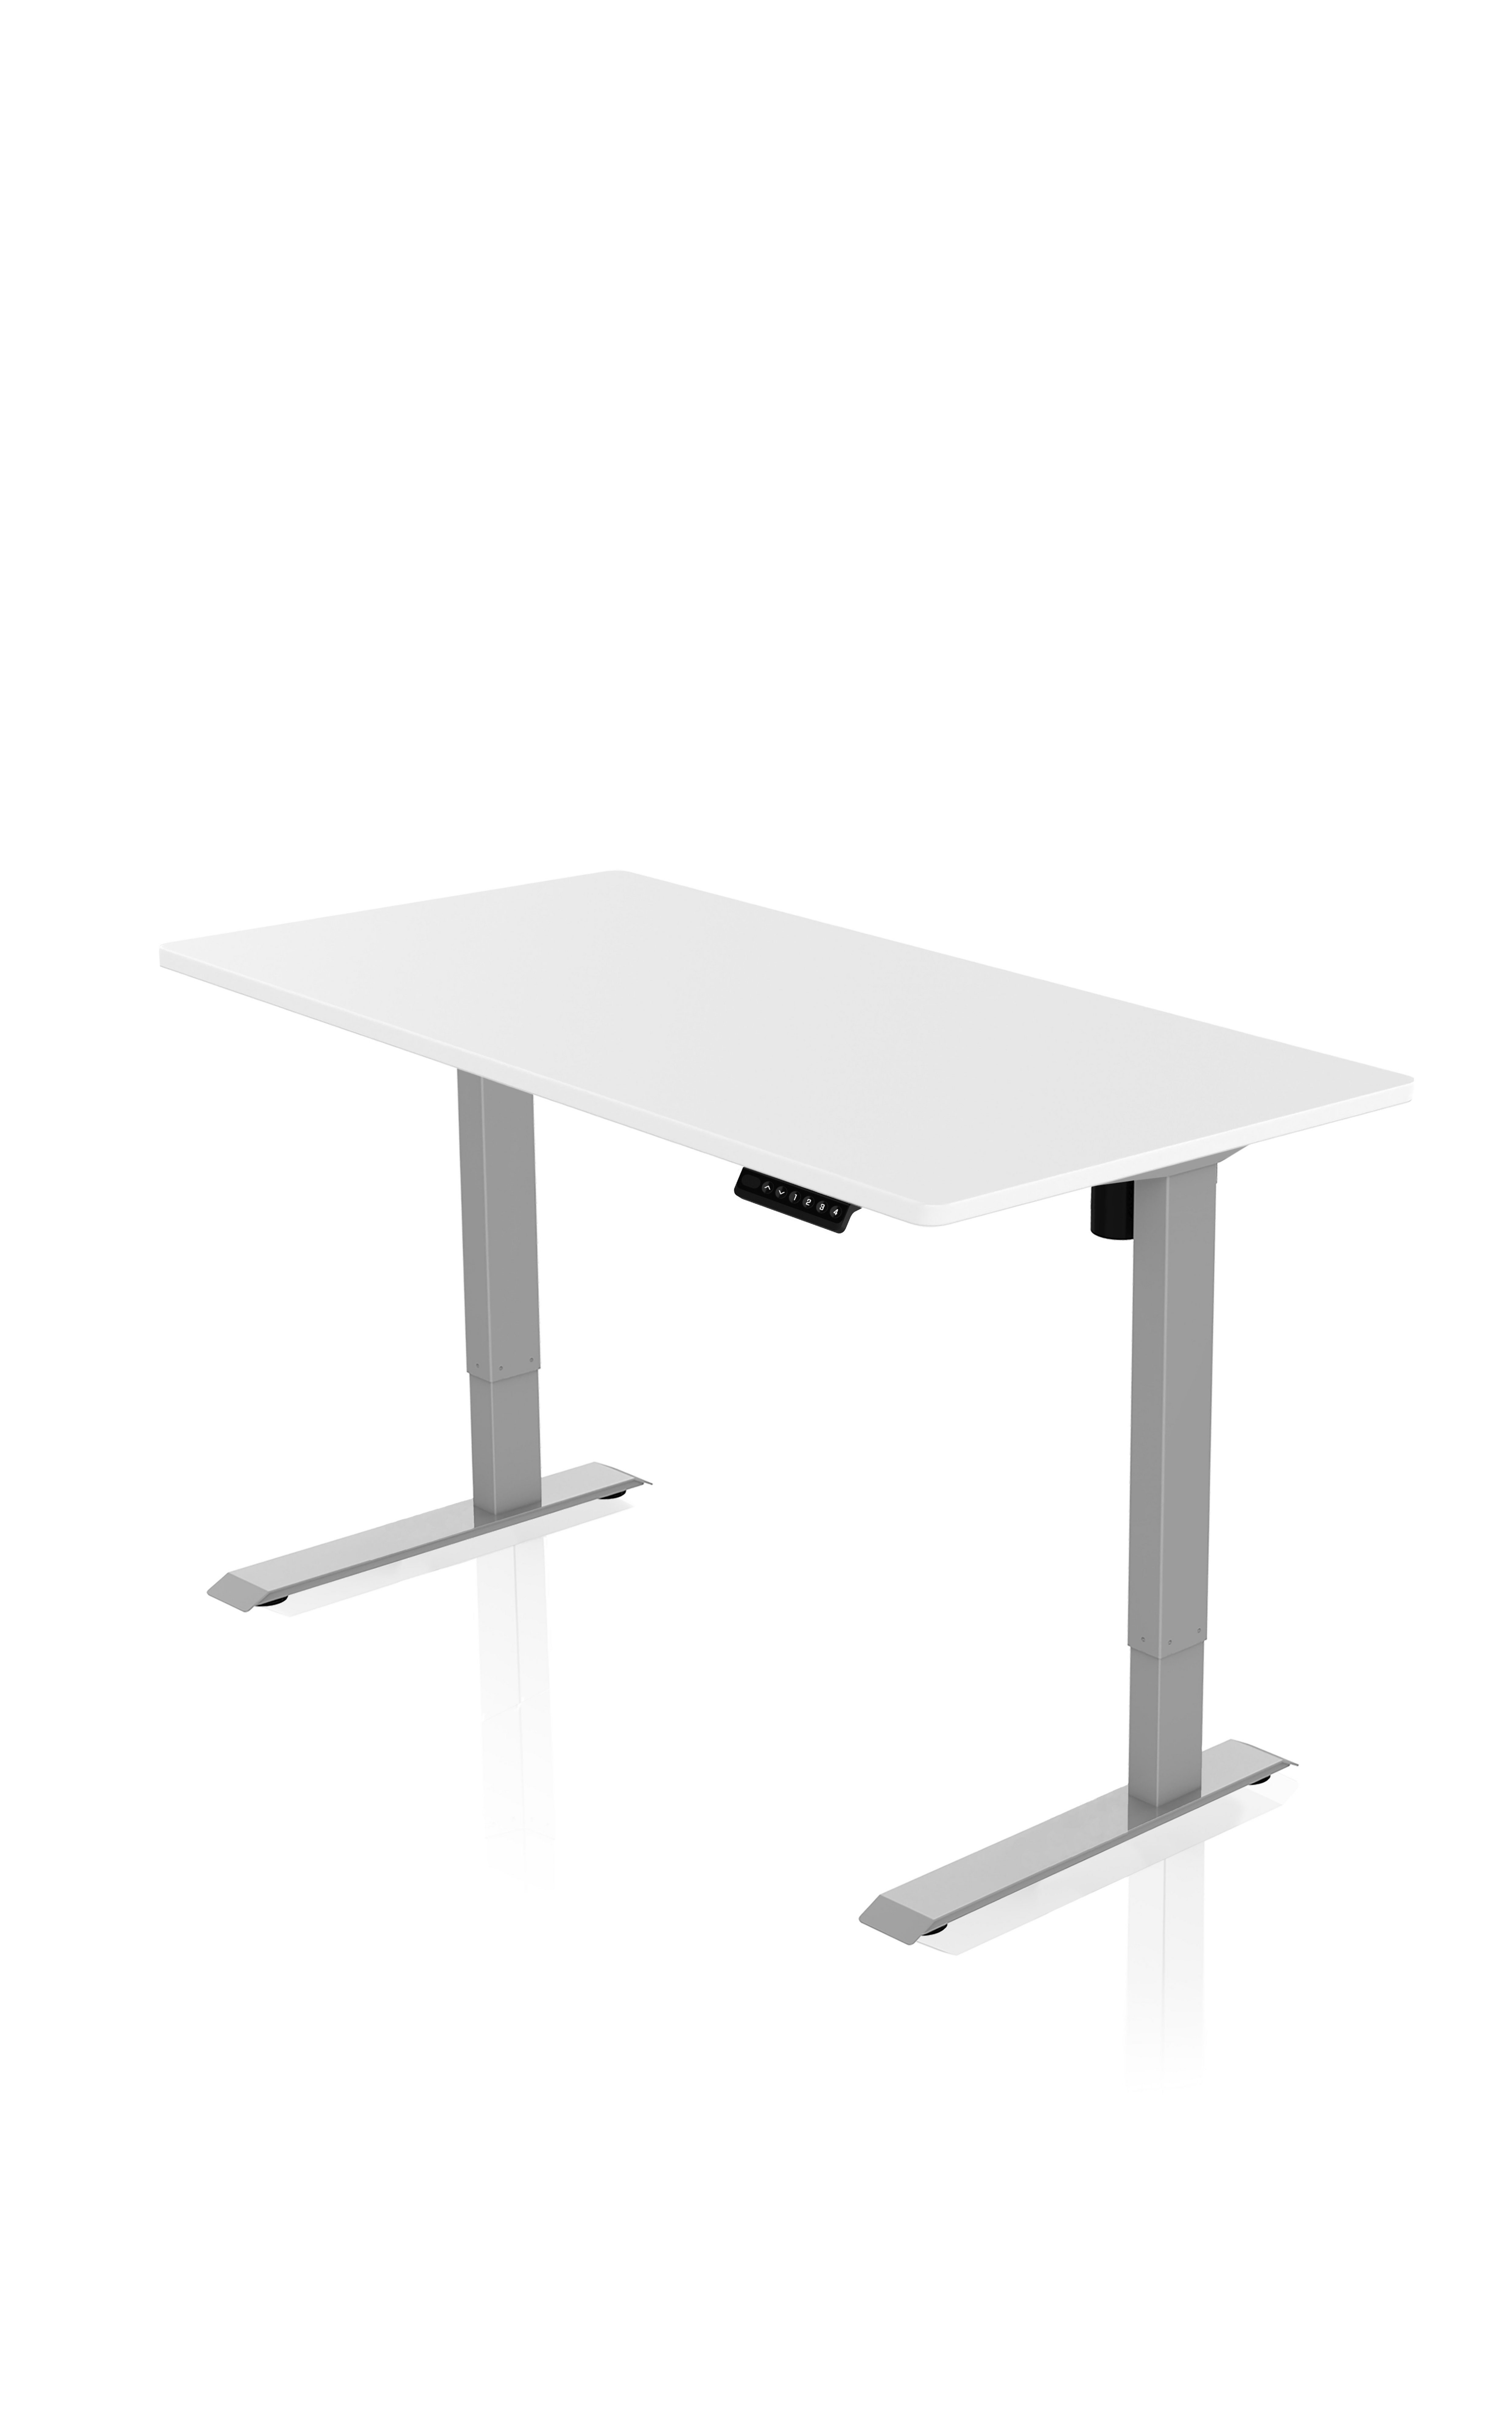 AGIl Schreibtisch elektrisch höhenverstellbarer Schreibtisch - 120*60 cm Komplett-Set Graues Gestell - Weiße Tischplatte